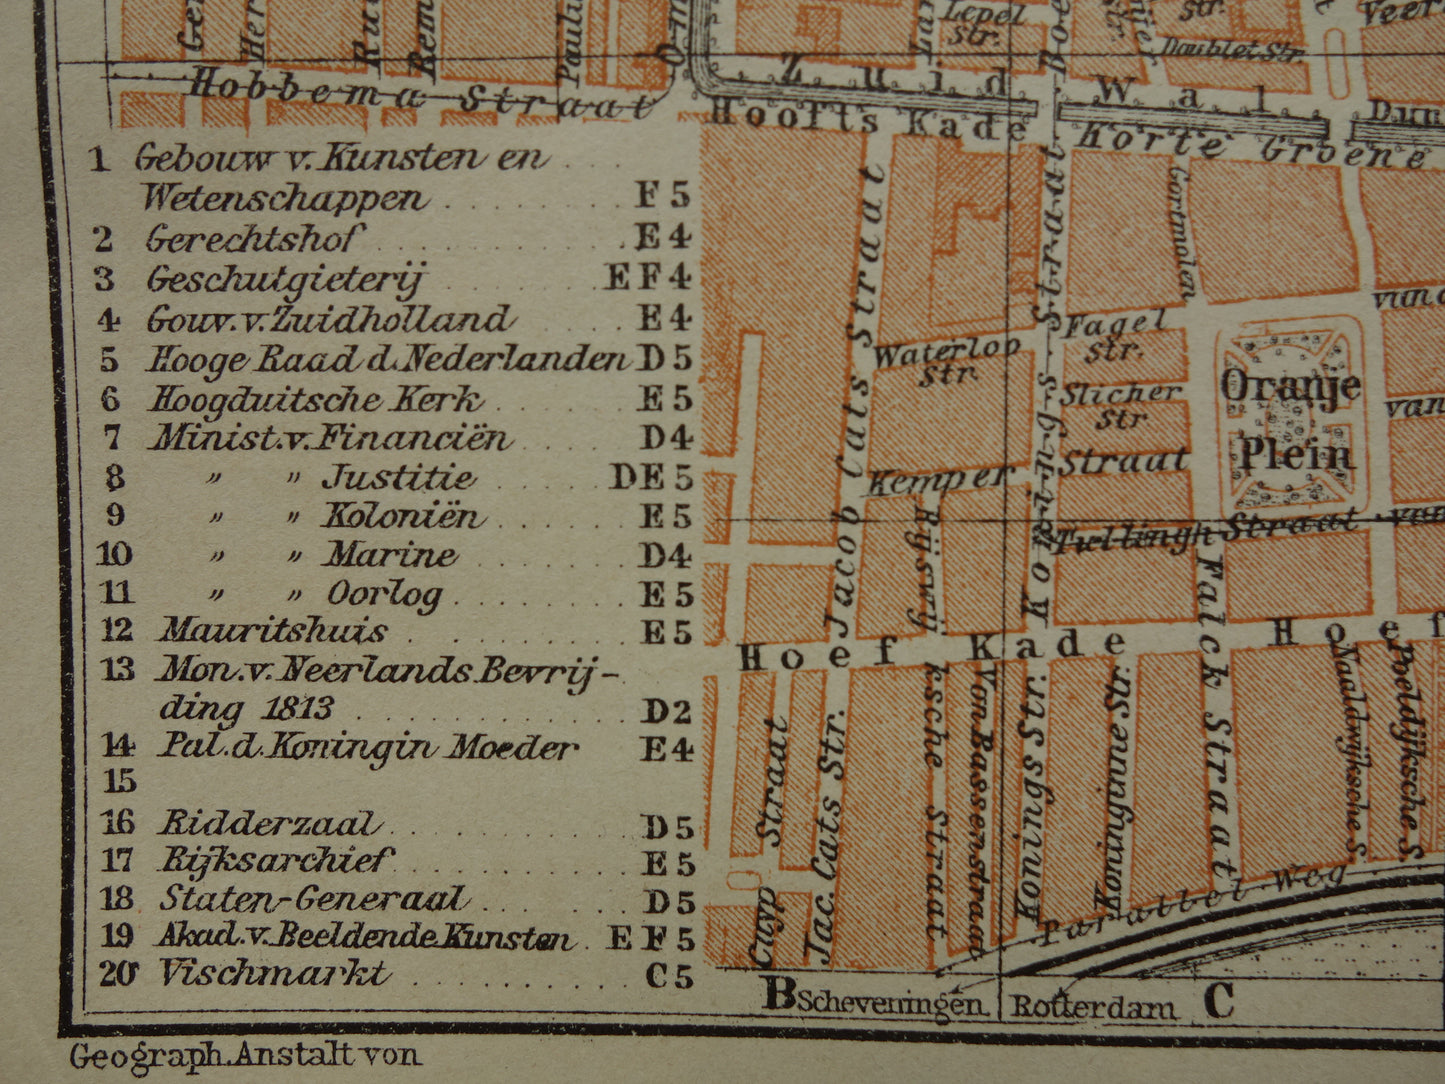 DEN HAAG oude kaart van 's Gravenhage uit 1910 kleine originele antieke plattegrond vintage landkaart